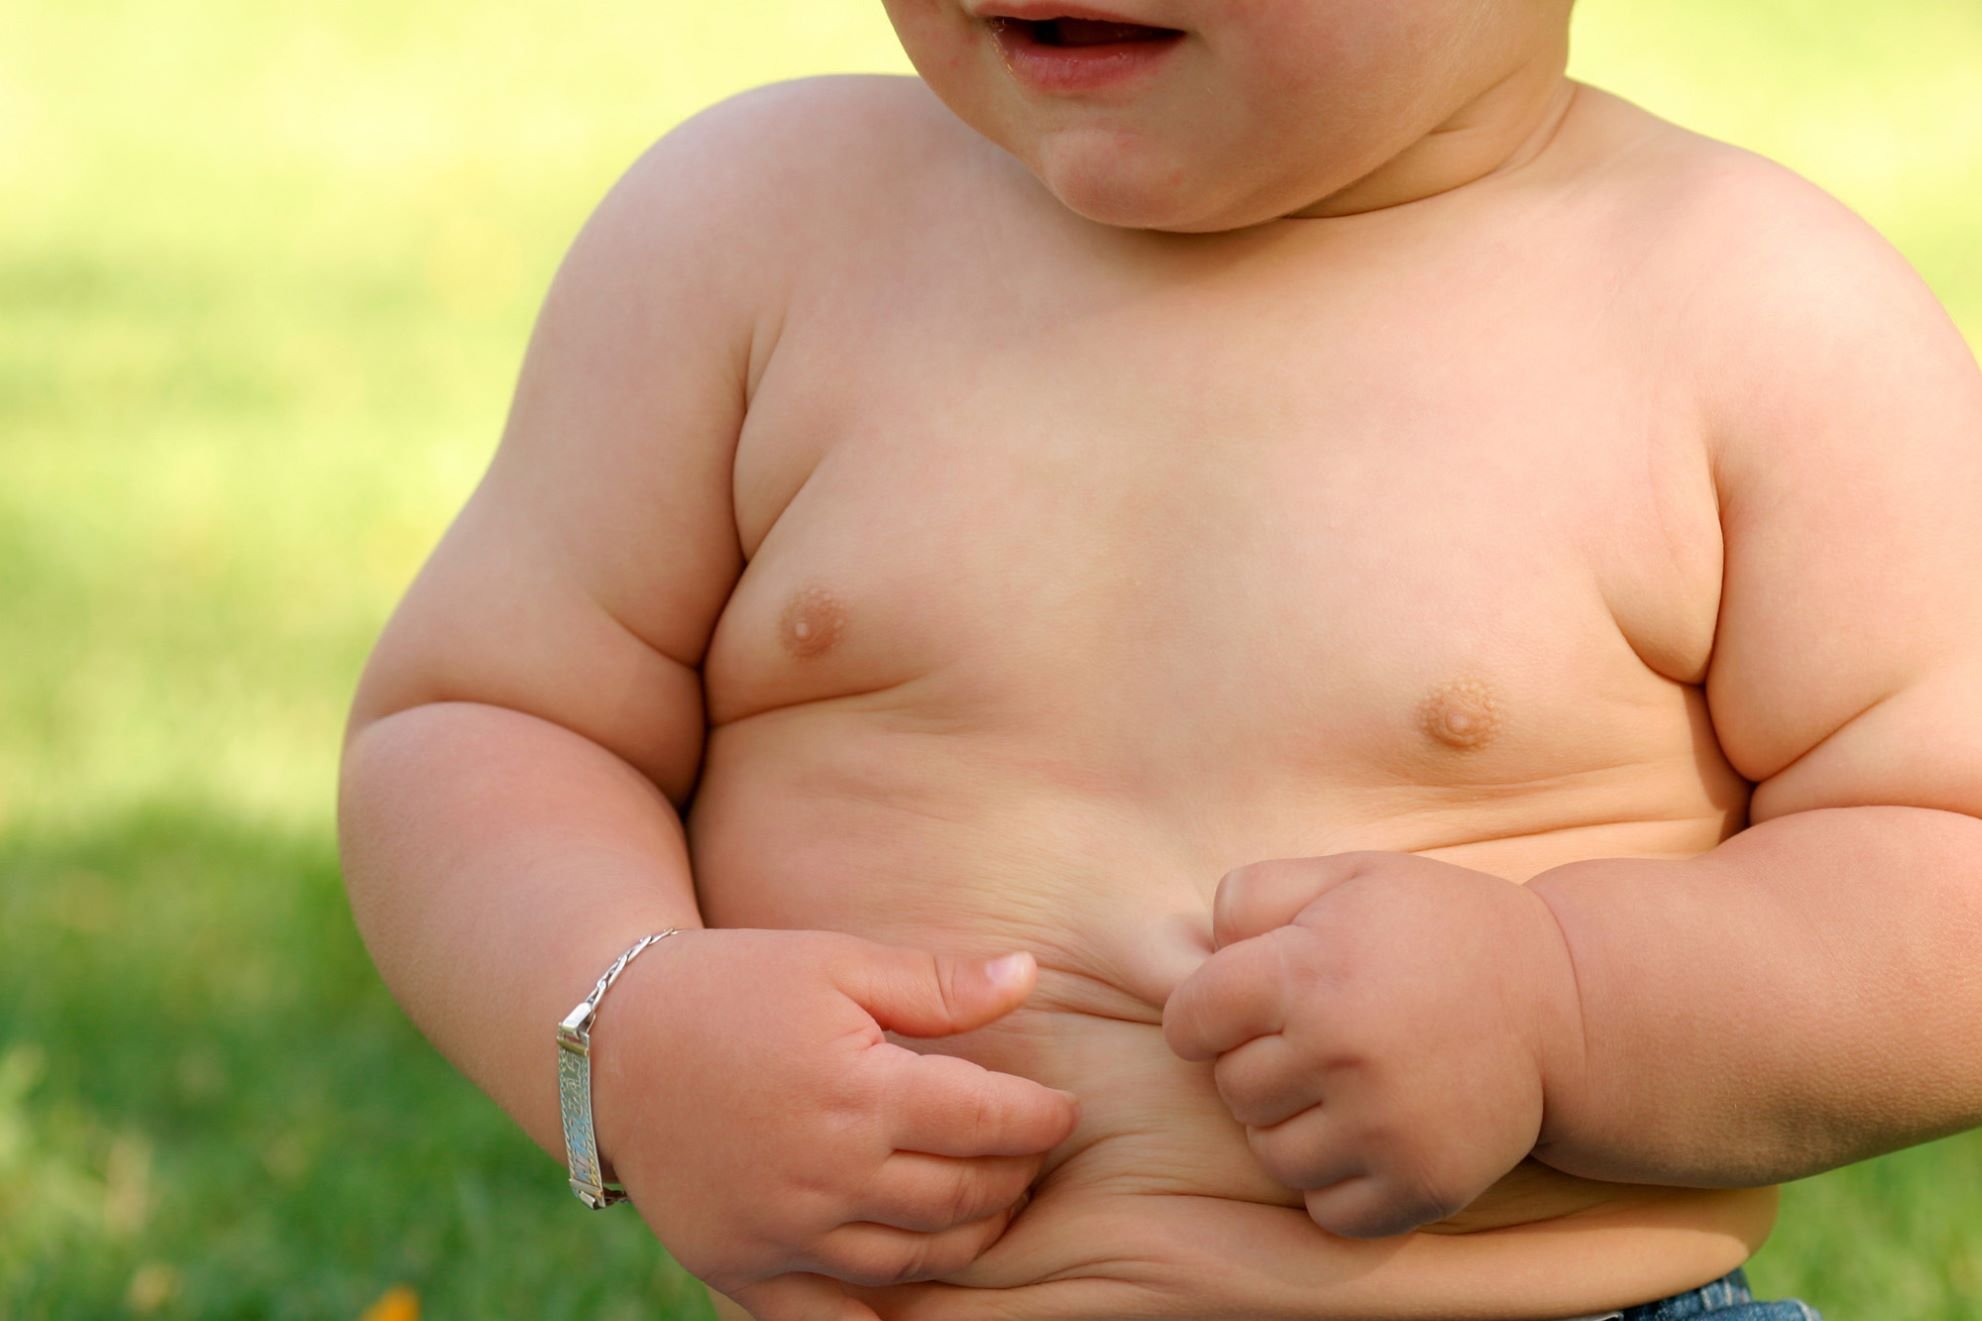 Studiu: Obezitatea infantilă apare cu o frecvență mai mare și la vârste mai mici decât în urmă cu un deceniu.